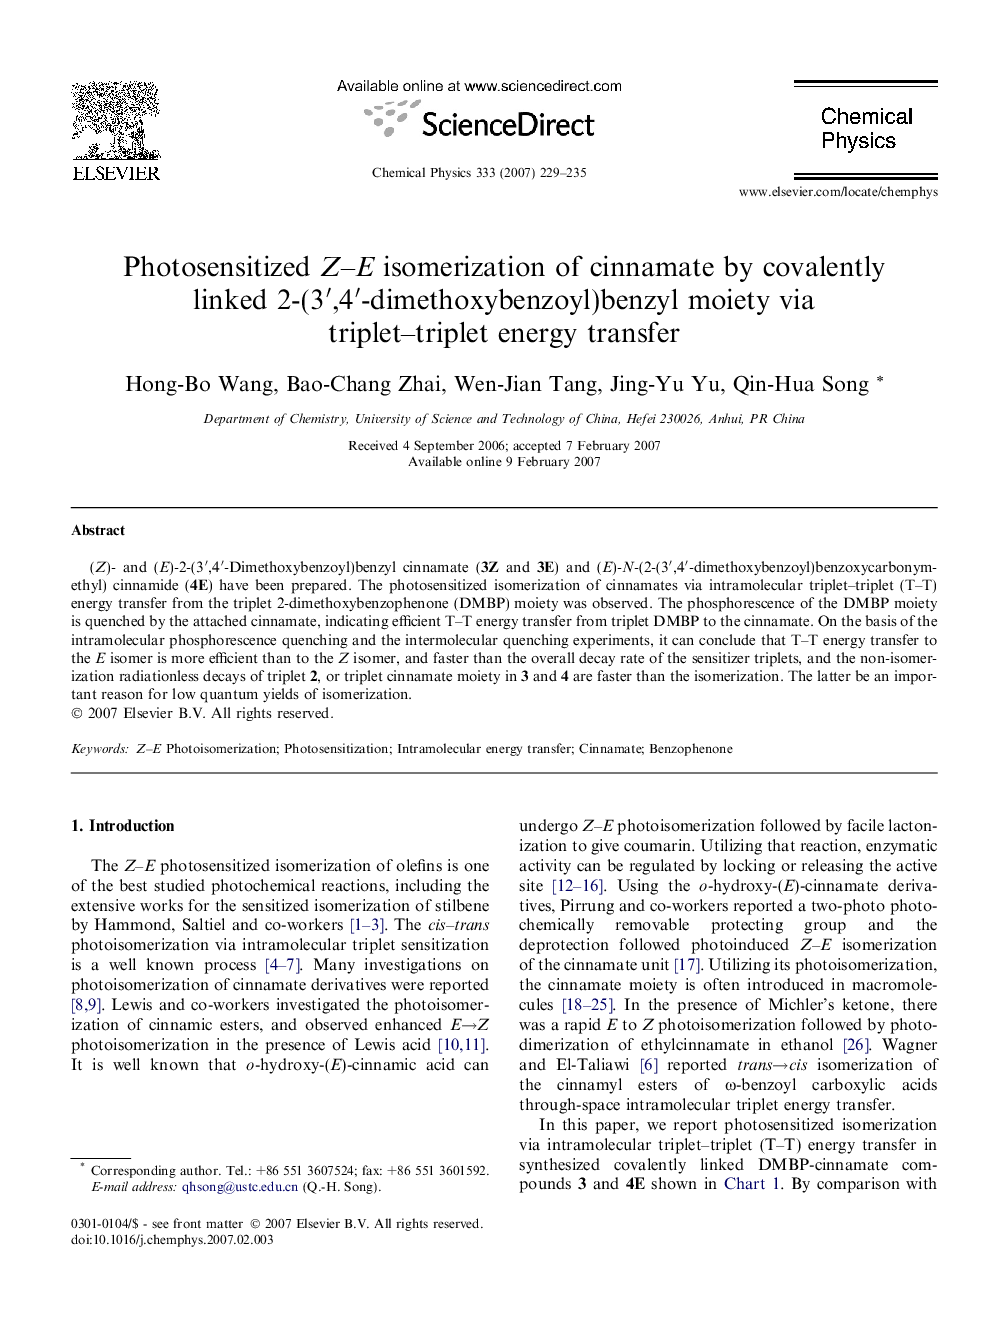 Photosensitized Z-E isomerization of cinnamate by covalently linked 2-(3â²,4â²-dimethoxybenzoyl)benzyl moiety via triplet-triplet energy transfer